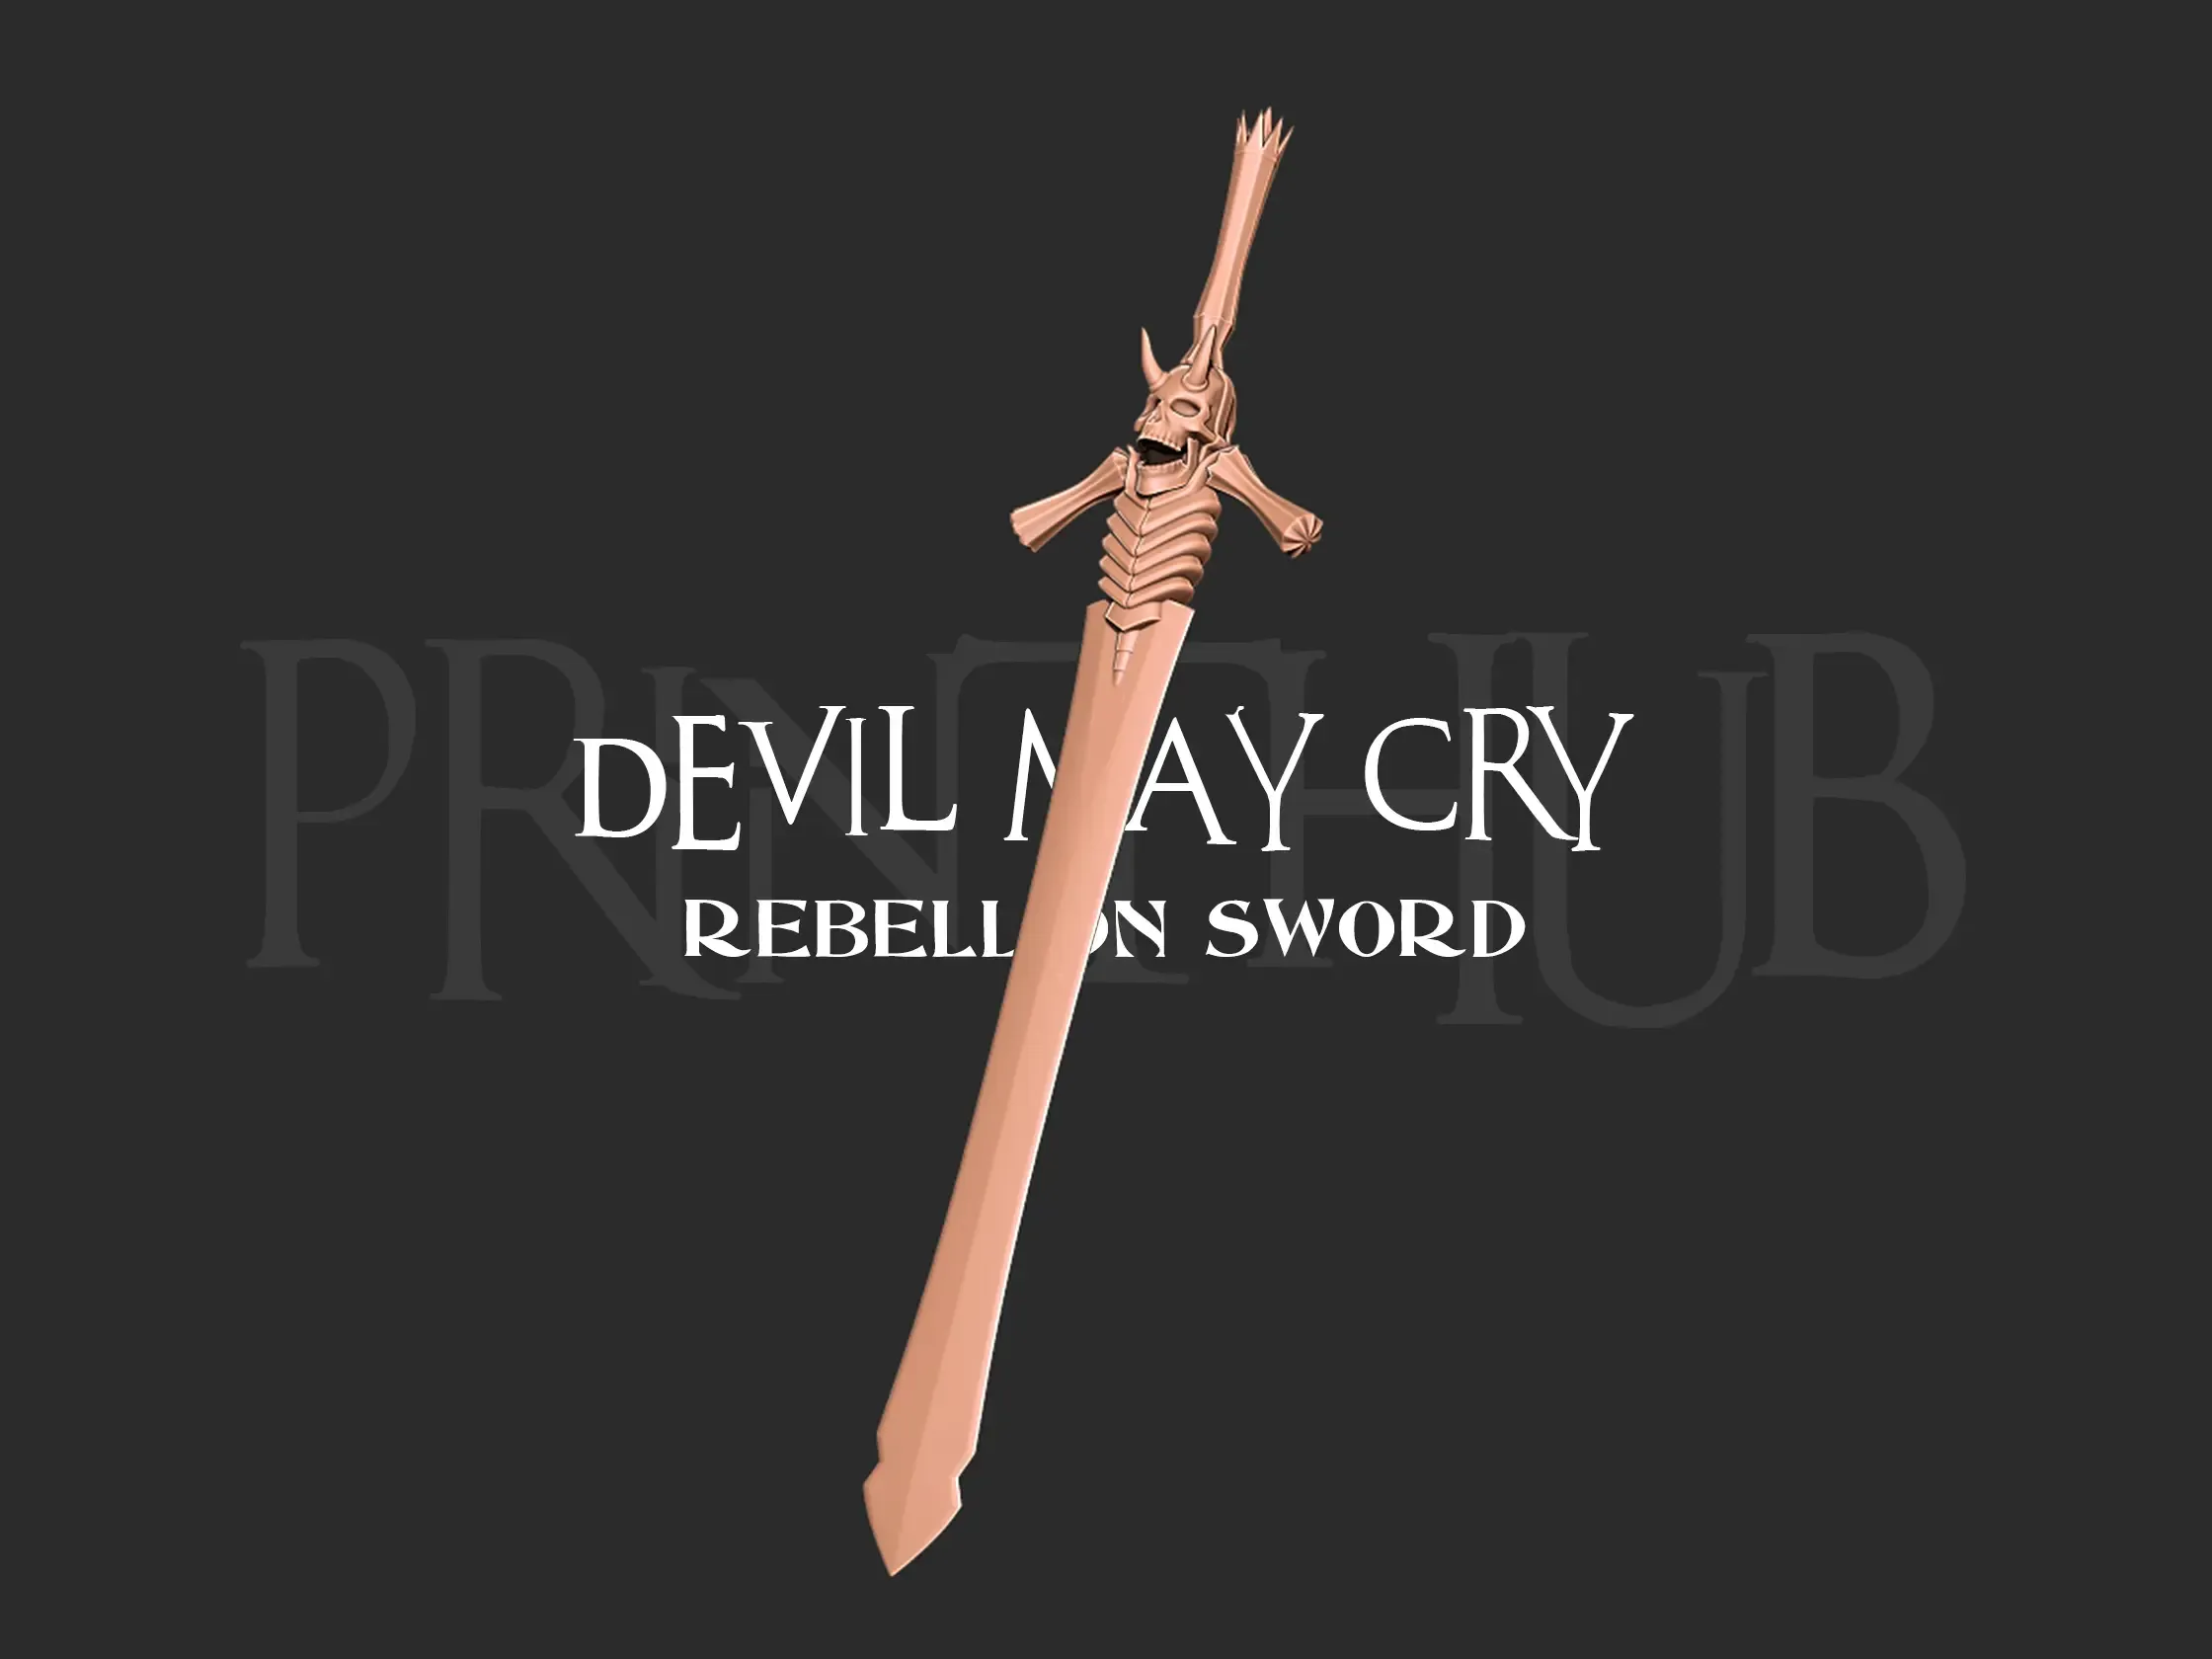 Rebellion Sword From Devil May Cry - Fan Art